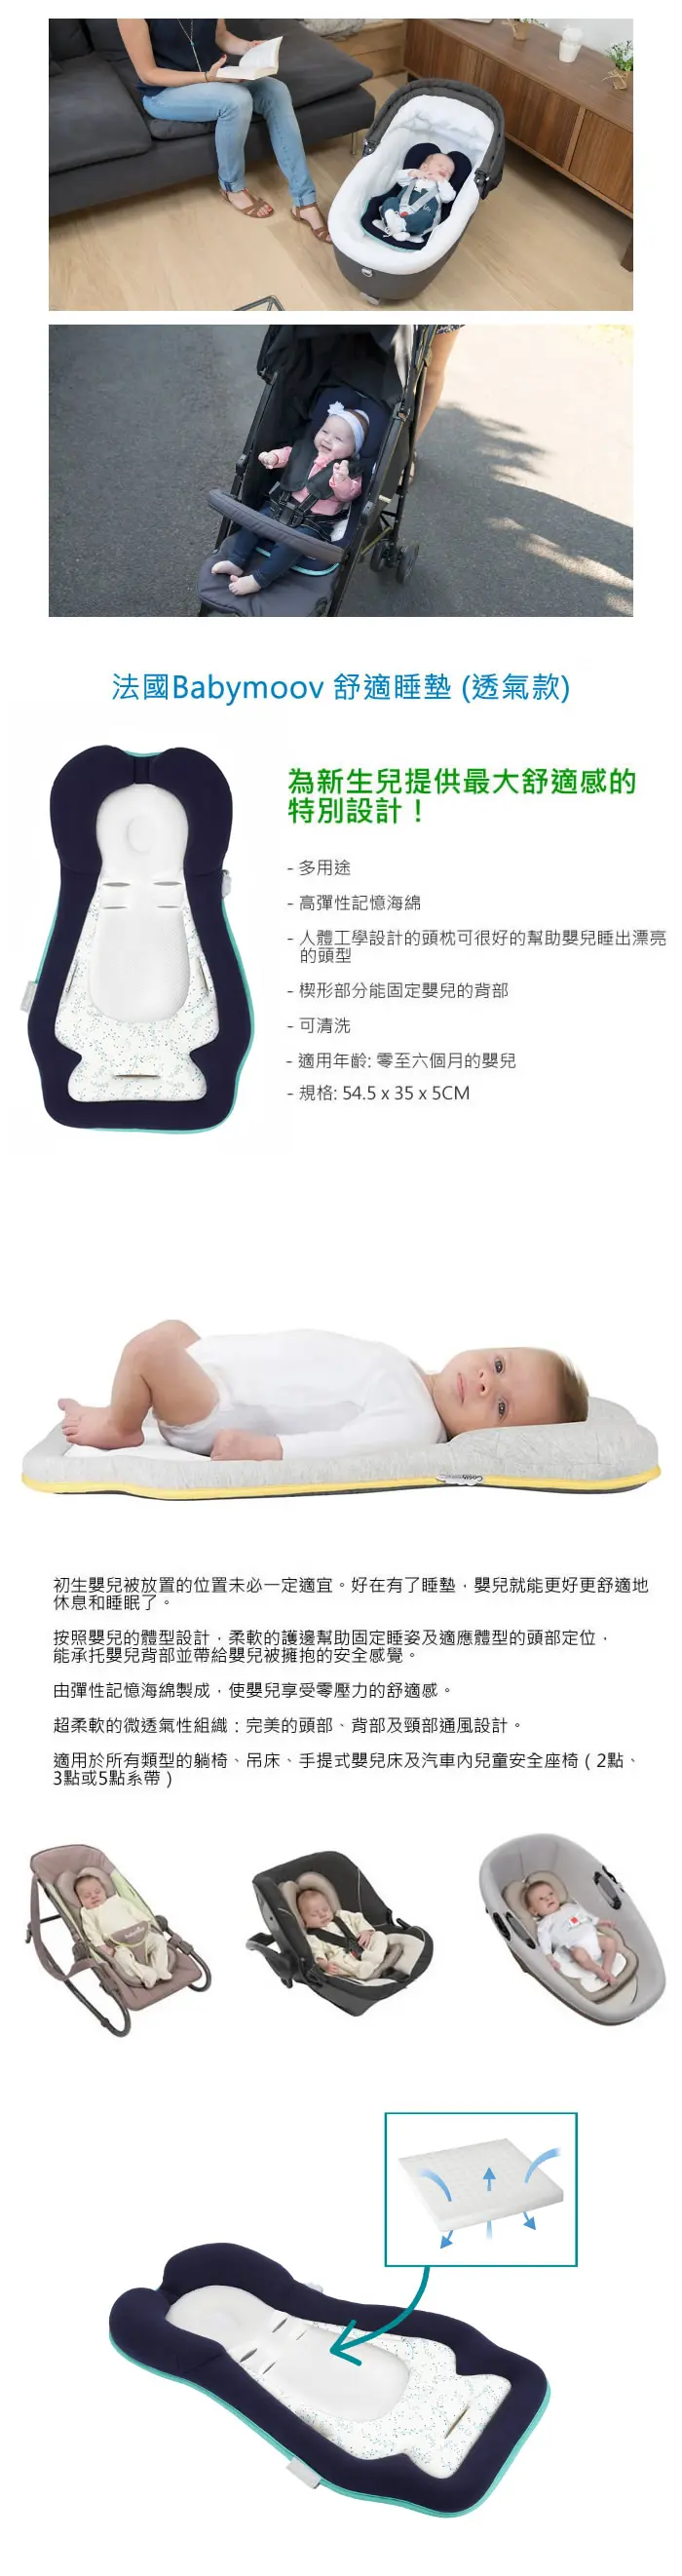 Babymoov 舒适睡垫(透气面料)